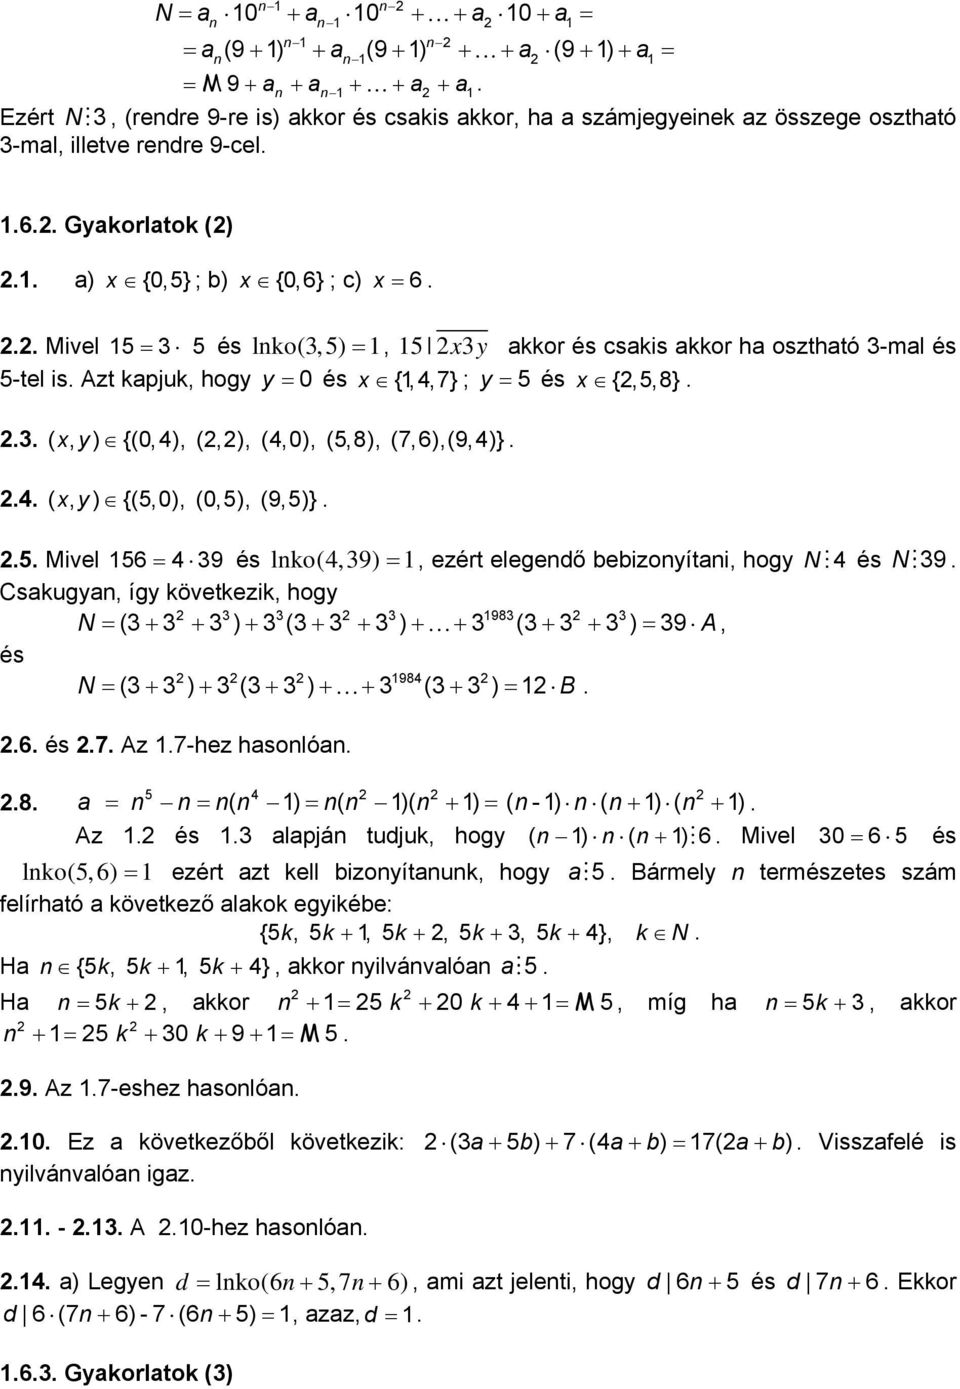 = 5 és x {,5,8} 3 ( xy, ) {(0,4), (,), (4,0), (5,8), (7,6),(9,4)} 4 ( xy, ) {(5,0), (0,5), (9,5)} 5 Mivel 56 = 4 39 és lko(4,39) =, ezért elegedő bebizoyítai, hogy N M4 és NM39 Csakugya, így